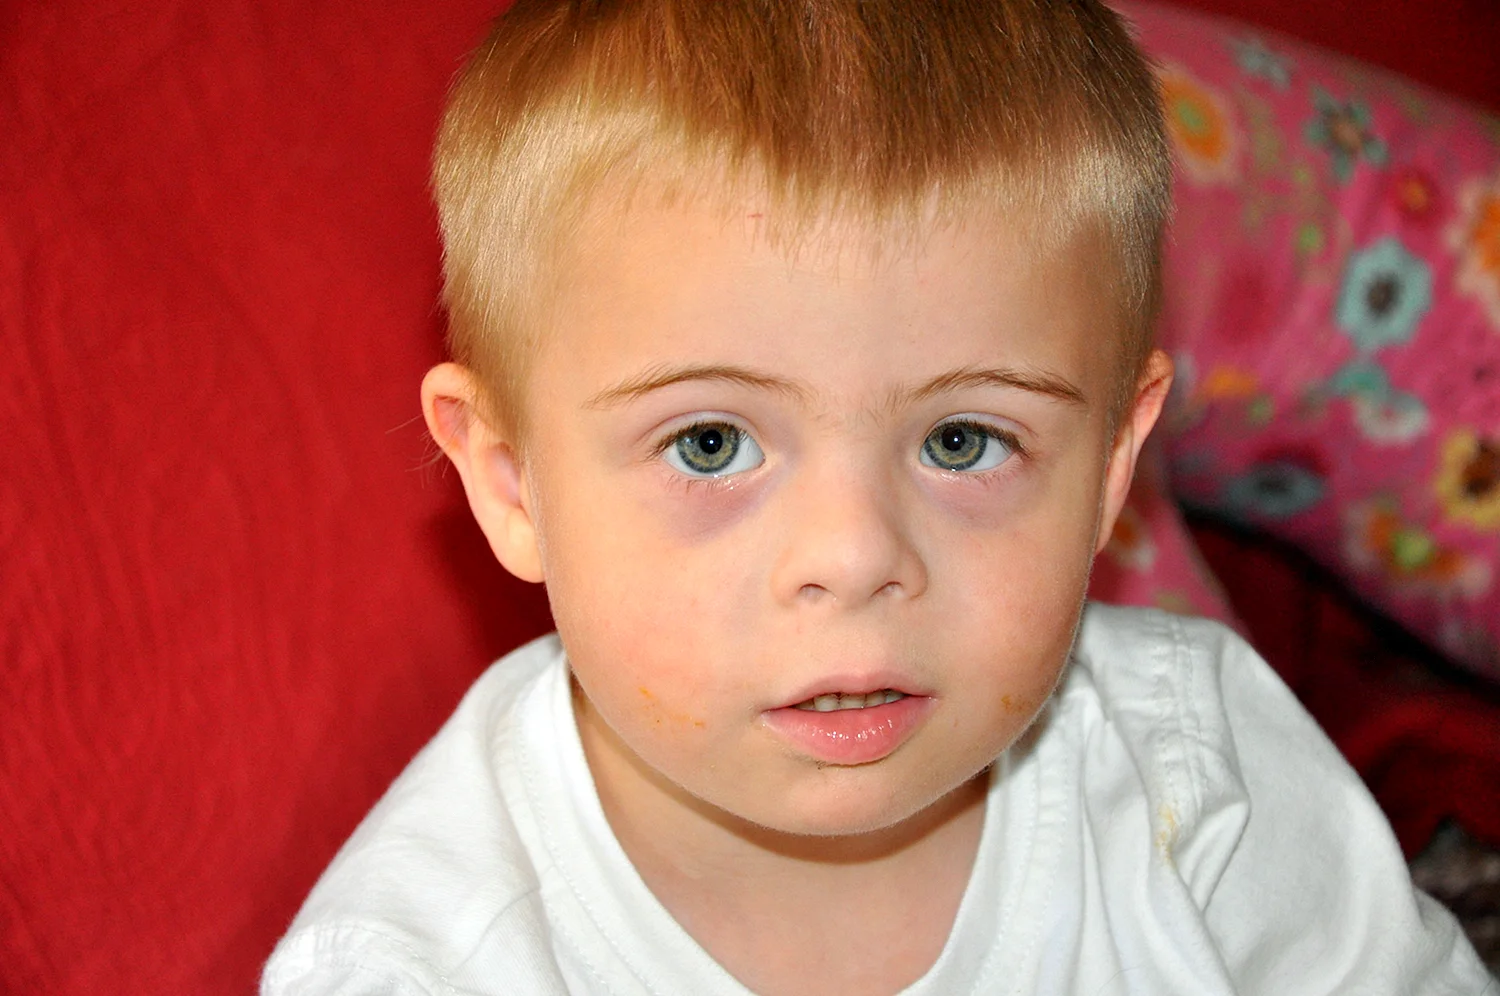 Радужка в глазах у ребенка с синдромом Вильямса